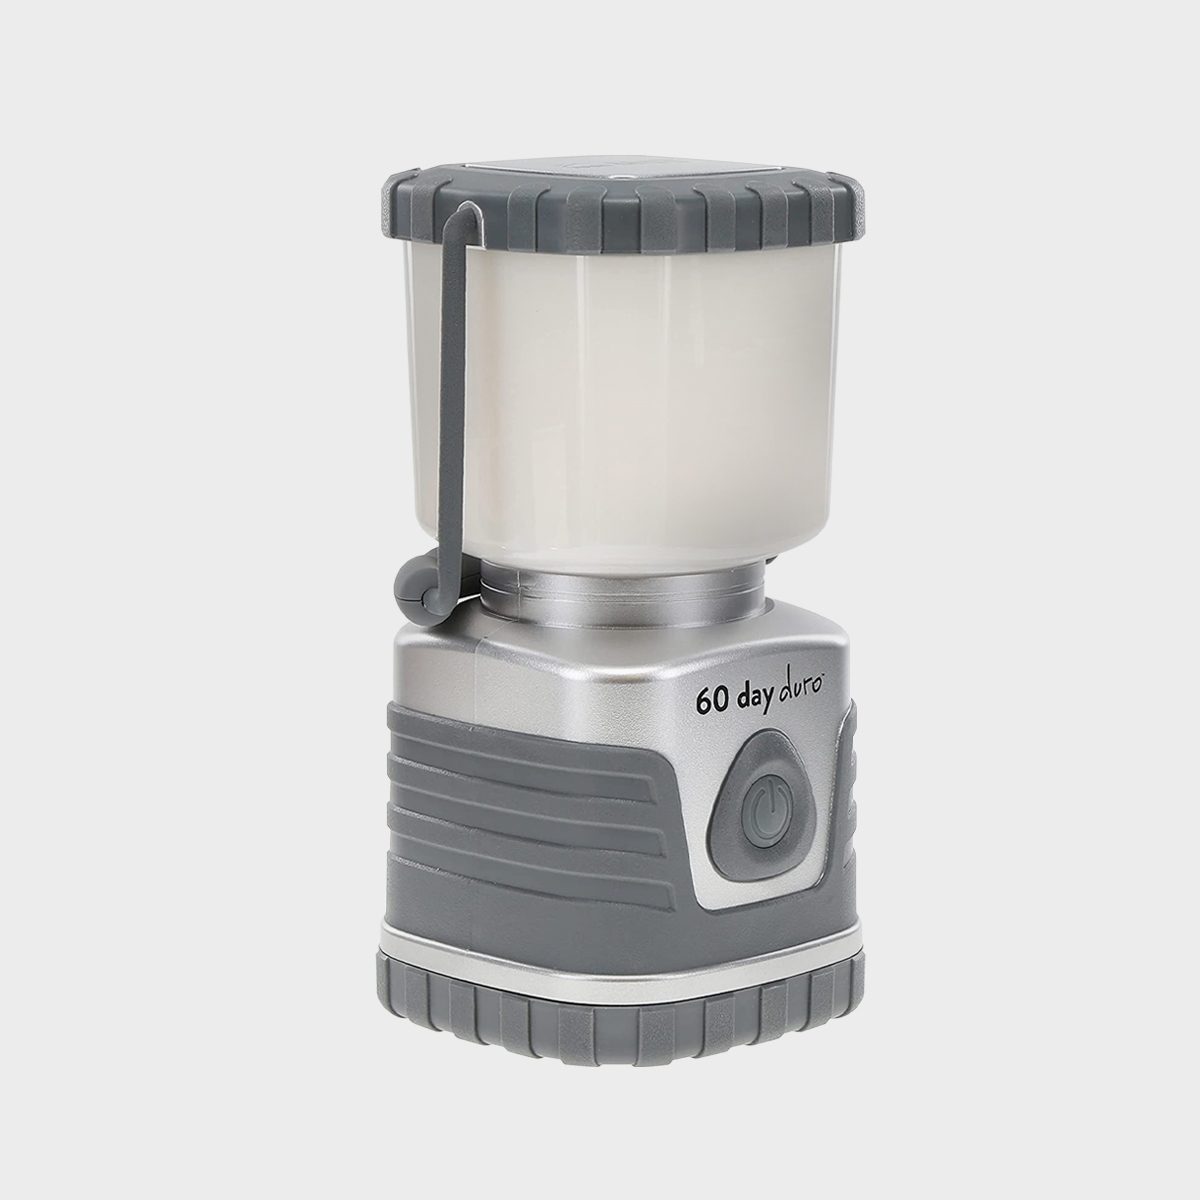 Ust 60 Day Duro Led Portable 1200 Lumen Lantern Ecomm Amazon.com